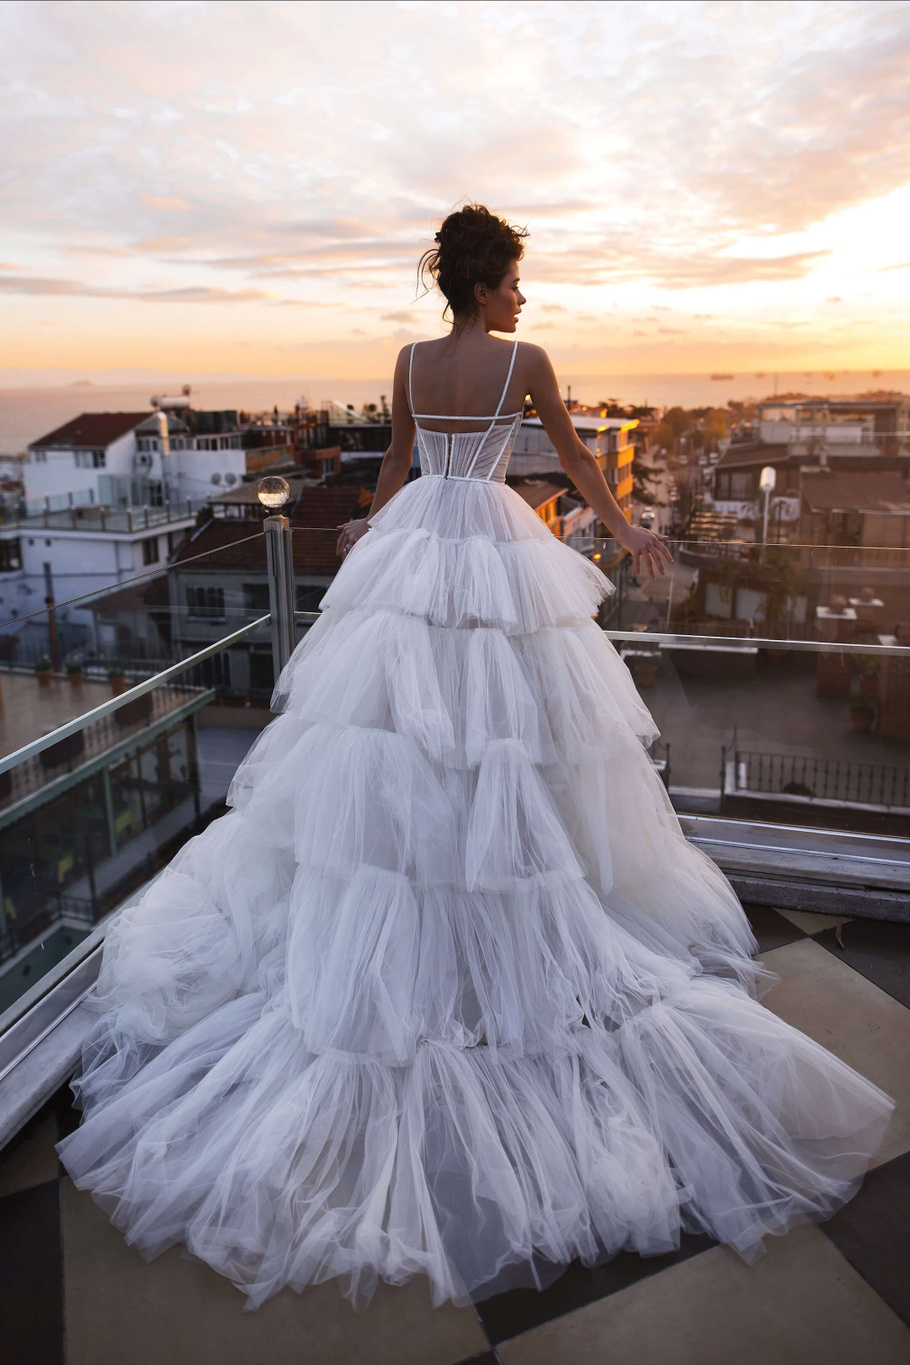 Купить свадебное платье «Лиам» Бламмо Биамо из коллекции 2018 года в Москве